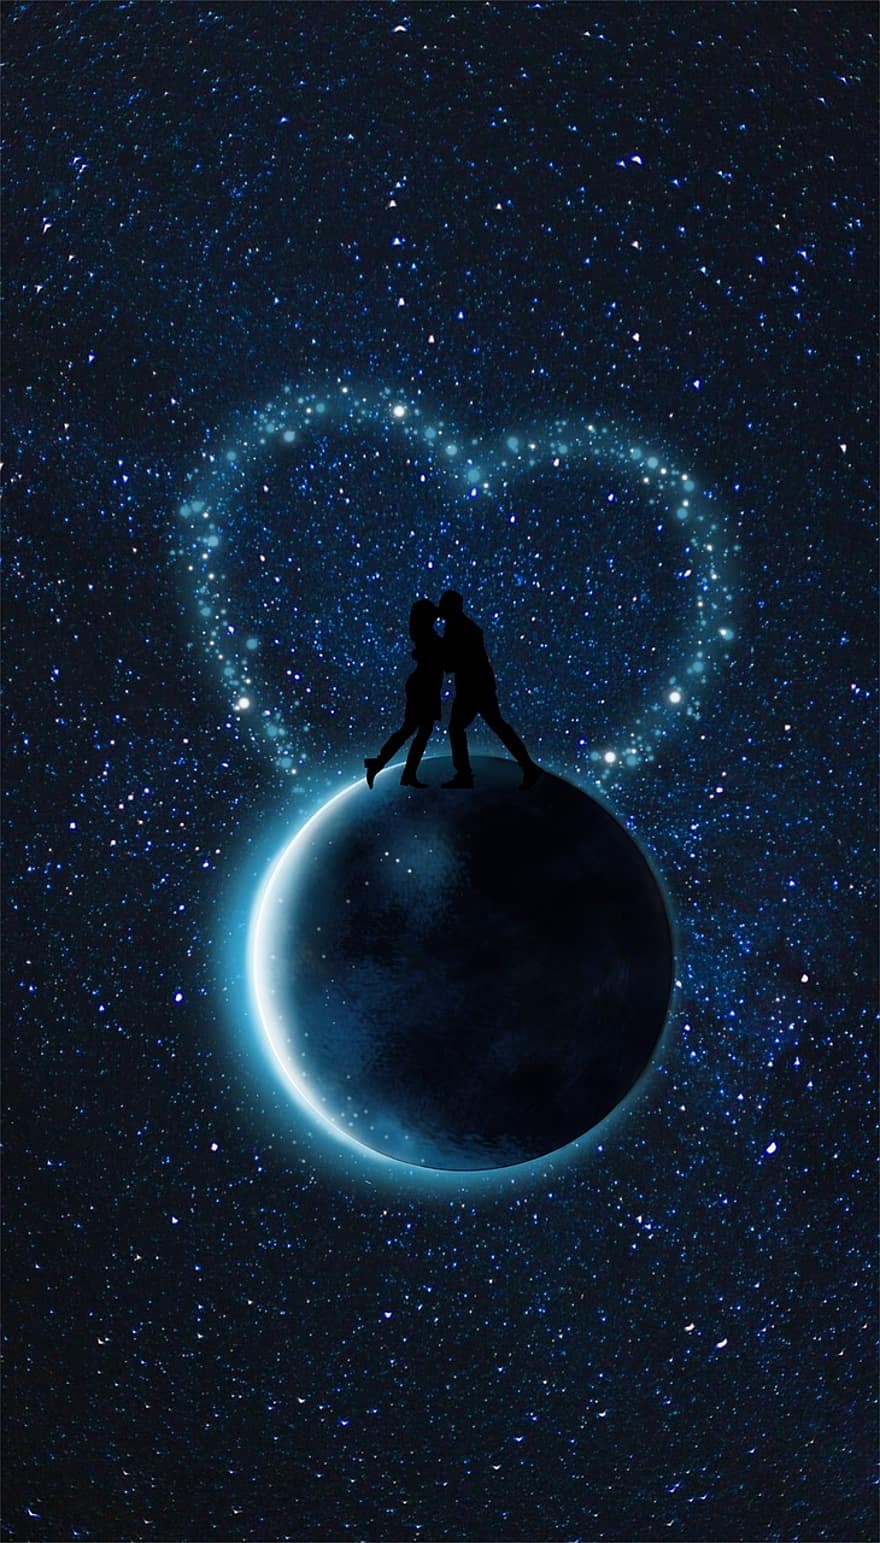 φεγγάρι, ζευγάρι, καρδιά, μπλε, σύμπαν, αστέρι, λάμψη, αγάπη, Σας φιλώ, ρομαντικός